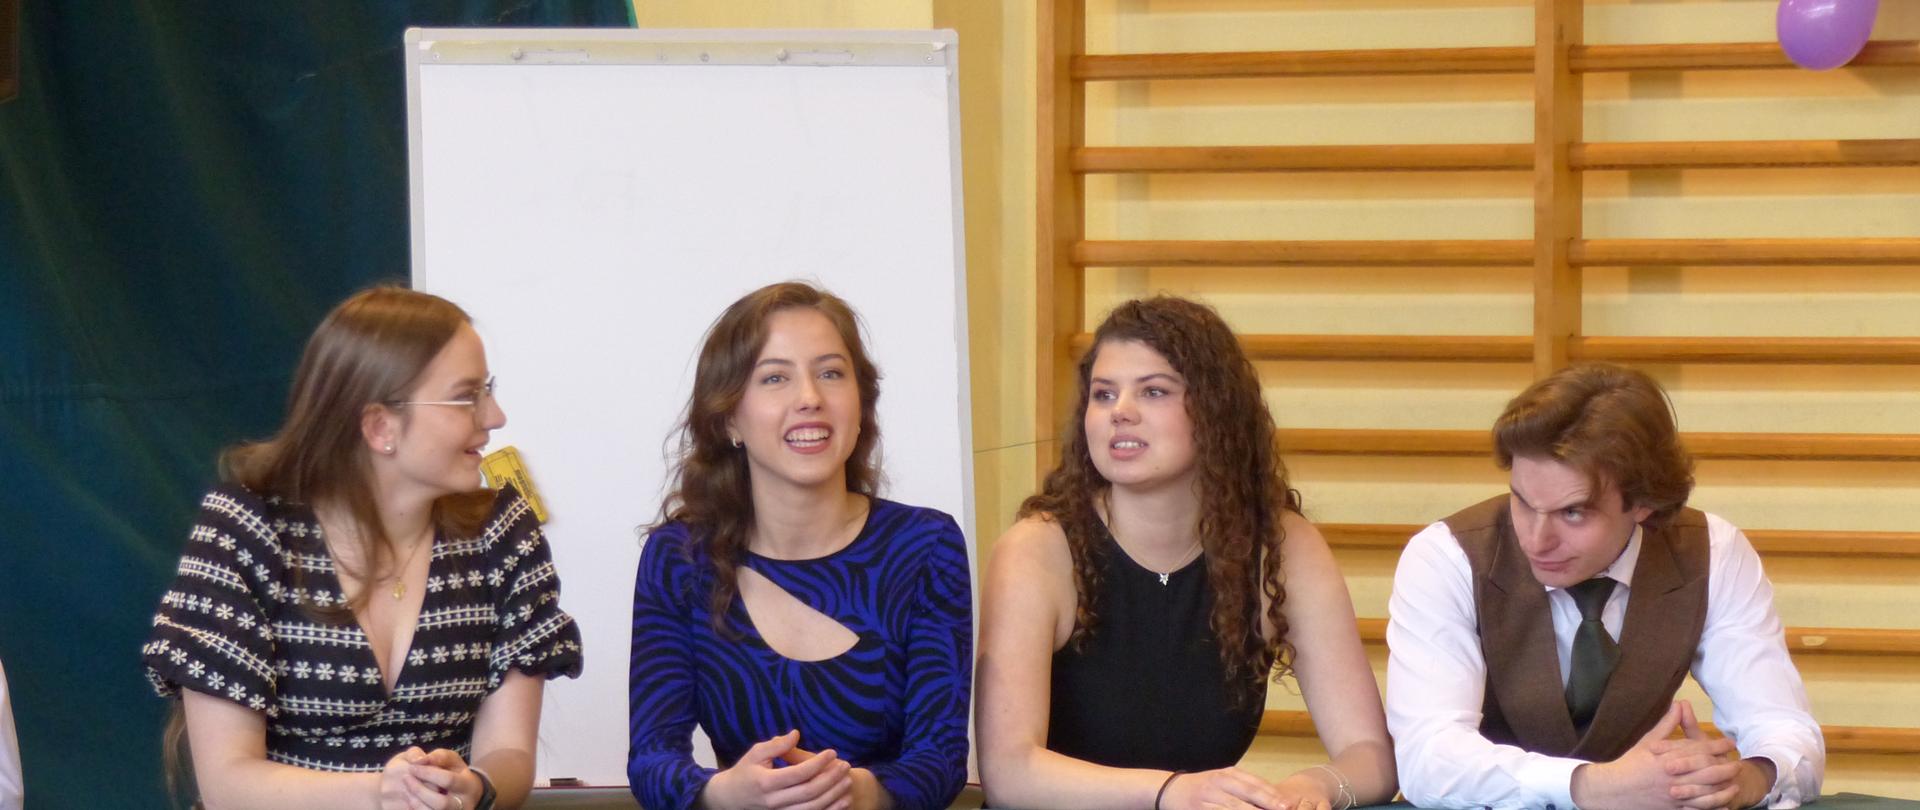 Na zdjęciu znajduje się grupa absolwentów biorących udział w części artystycznej uroczystości - Wielka Gra.
Absolwenci siedzą za stołem ubranym w zielony obrus. Od lewej strony: Anna Lenart, Emilia Wojtyczko, Małgorzata Sularz i Tadeusz Kmiecik